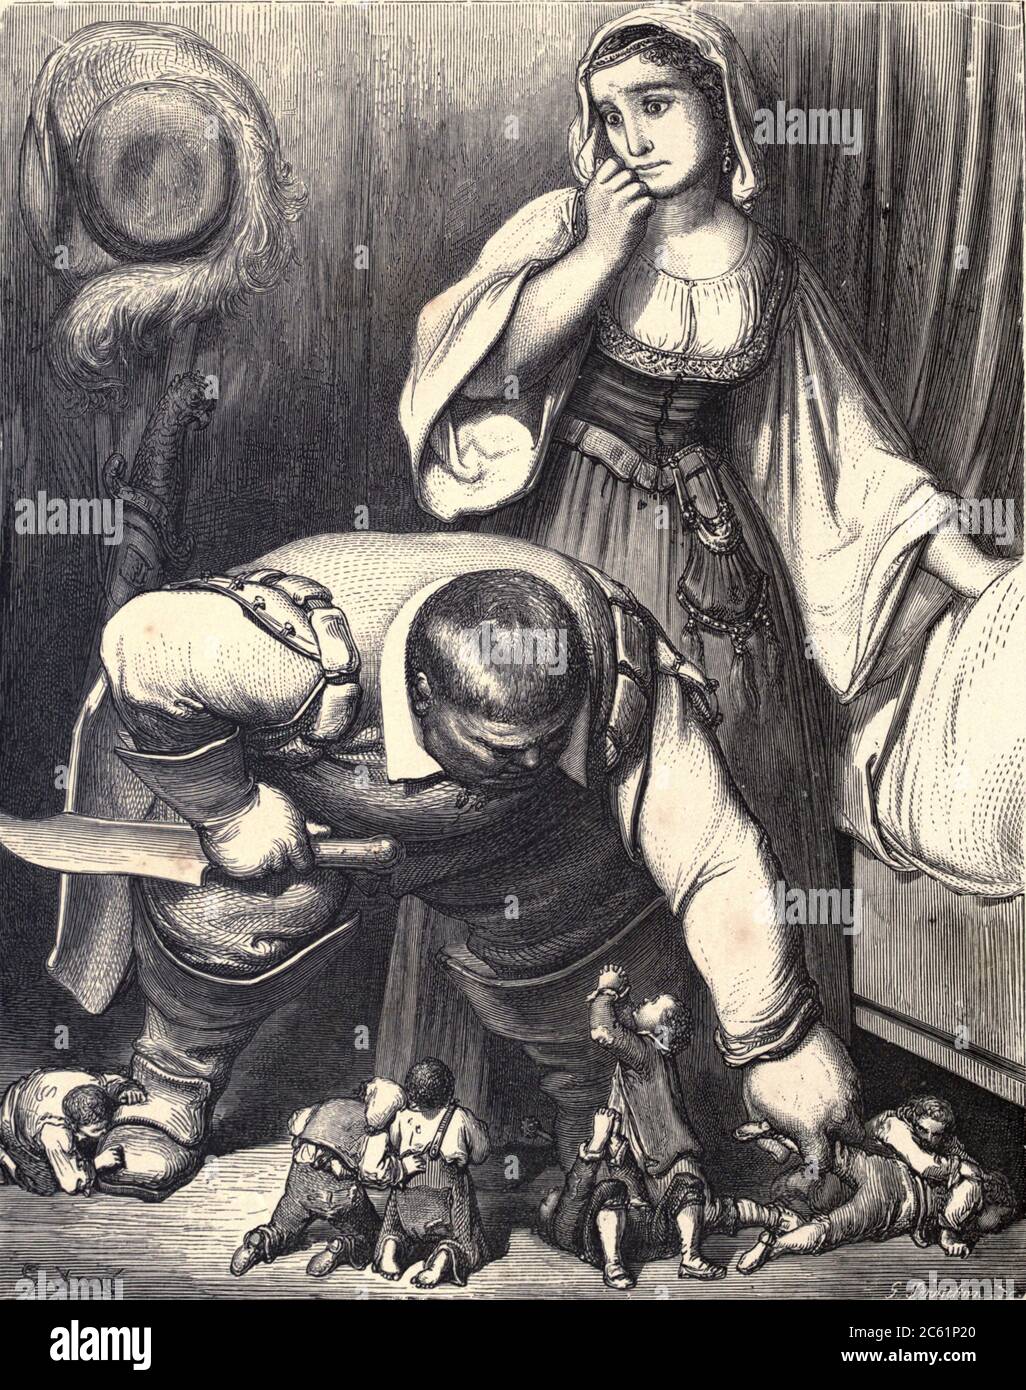 Per braccio, gamba o testa, trascinò tutti i ricci da sotto il letto" Illustrazione da ‘Hop o’ My Thumb’ di Paul Gustave Dore. Hop-o'-My-Thumb (Hop-on-My-Thumb), o Hop o' My Thumb, noto anche come Little Thumbling, Little Thumb, o Little Poucet è una delle otto favole pubblicate da Charles Perrault in Histoires ou Contes du temps passé (1697), dove il piccolo ragazzo sconfigge l'orco. Illustrazione di Gustave Dore dal regno fata del libro. Una raccolta dei vecchi racconti preferiti. Illustrato dalla matita di Gustave Dore di Tom Hood, (1835-1874); Gustave Doré, (1832-1883) pubblicato a Londra Foto Stock